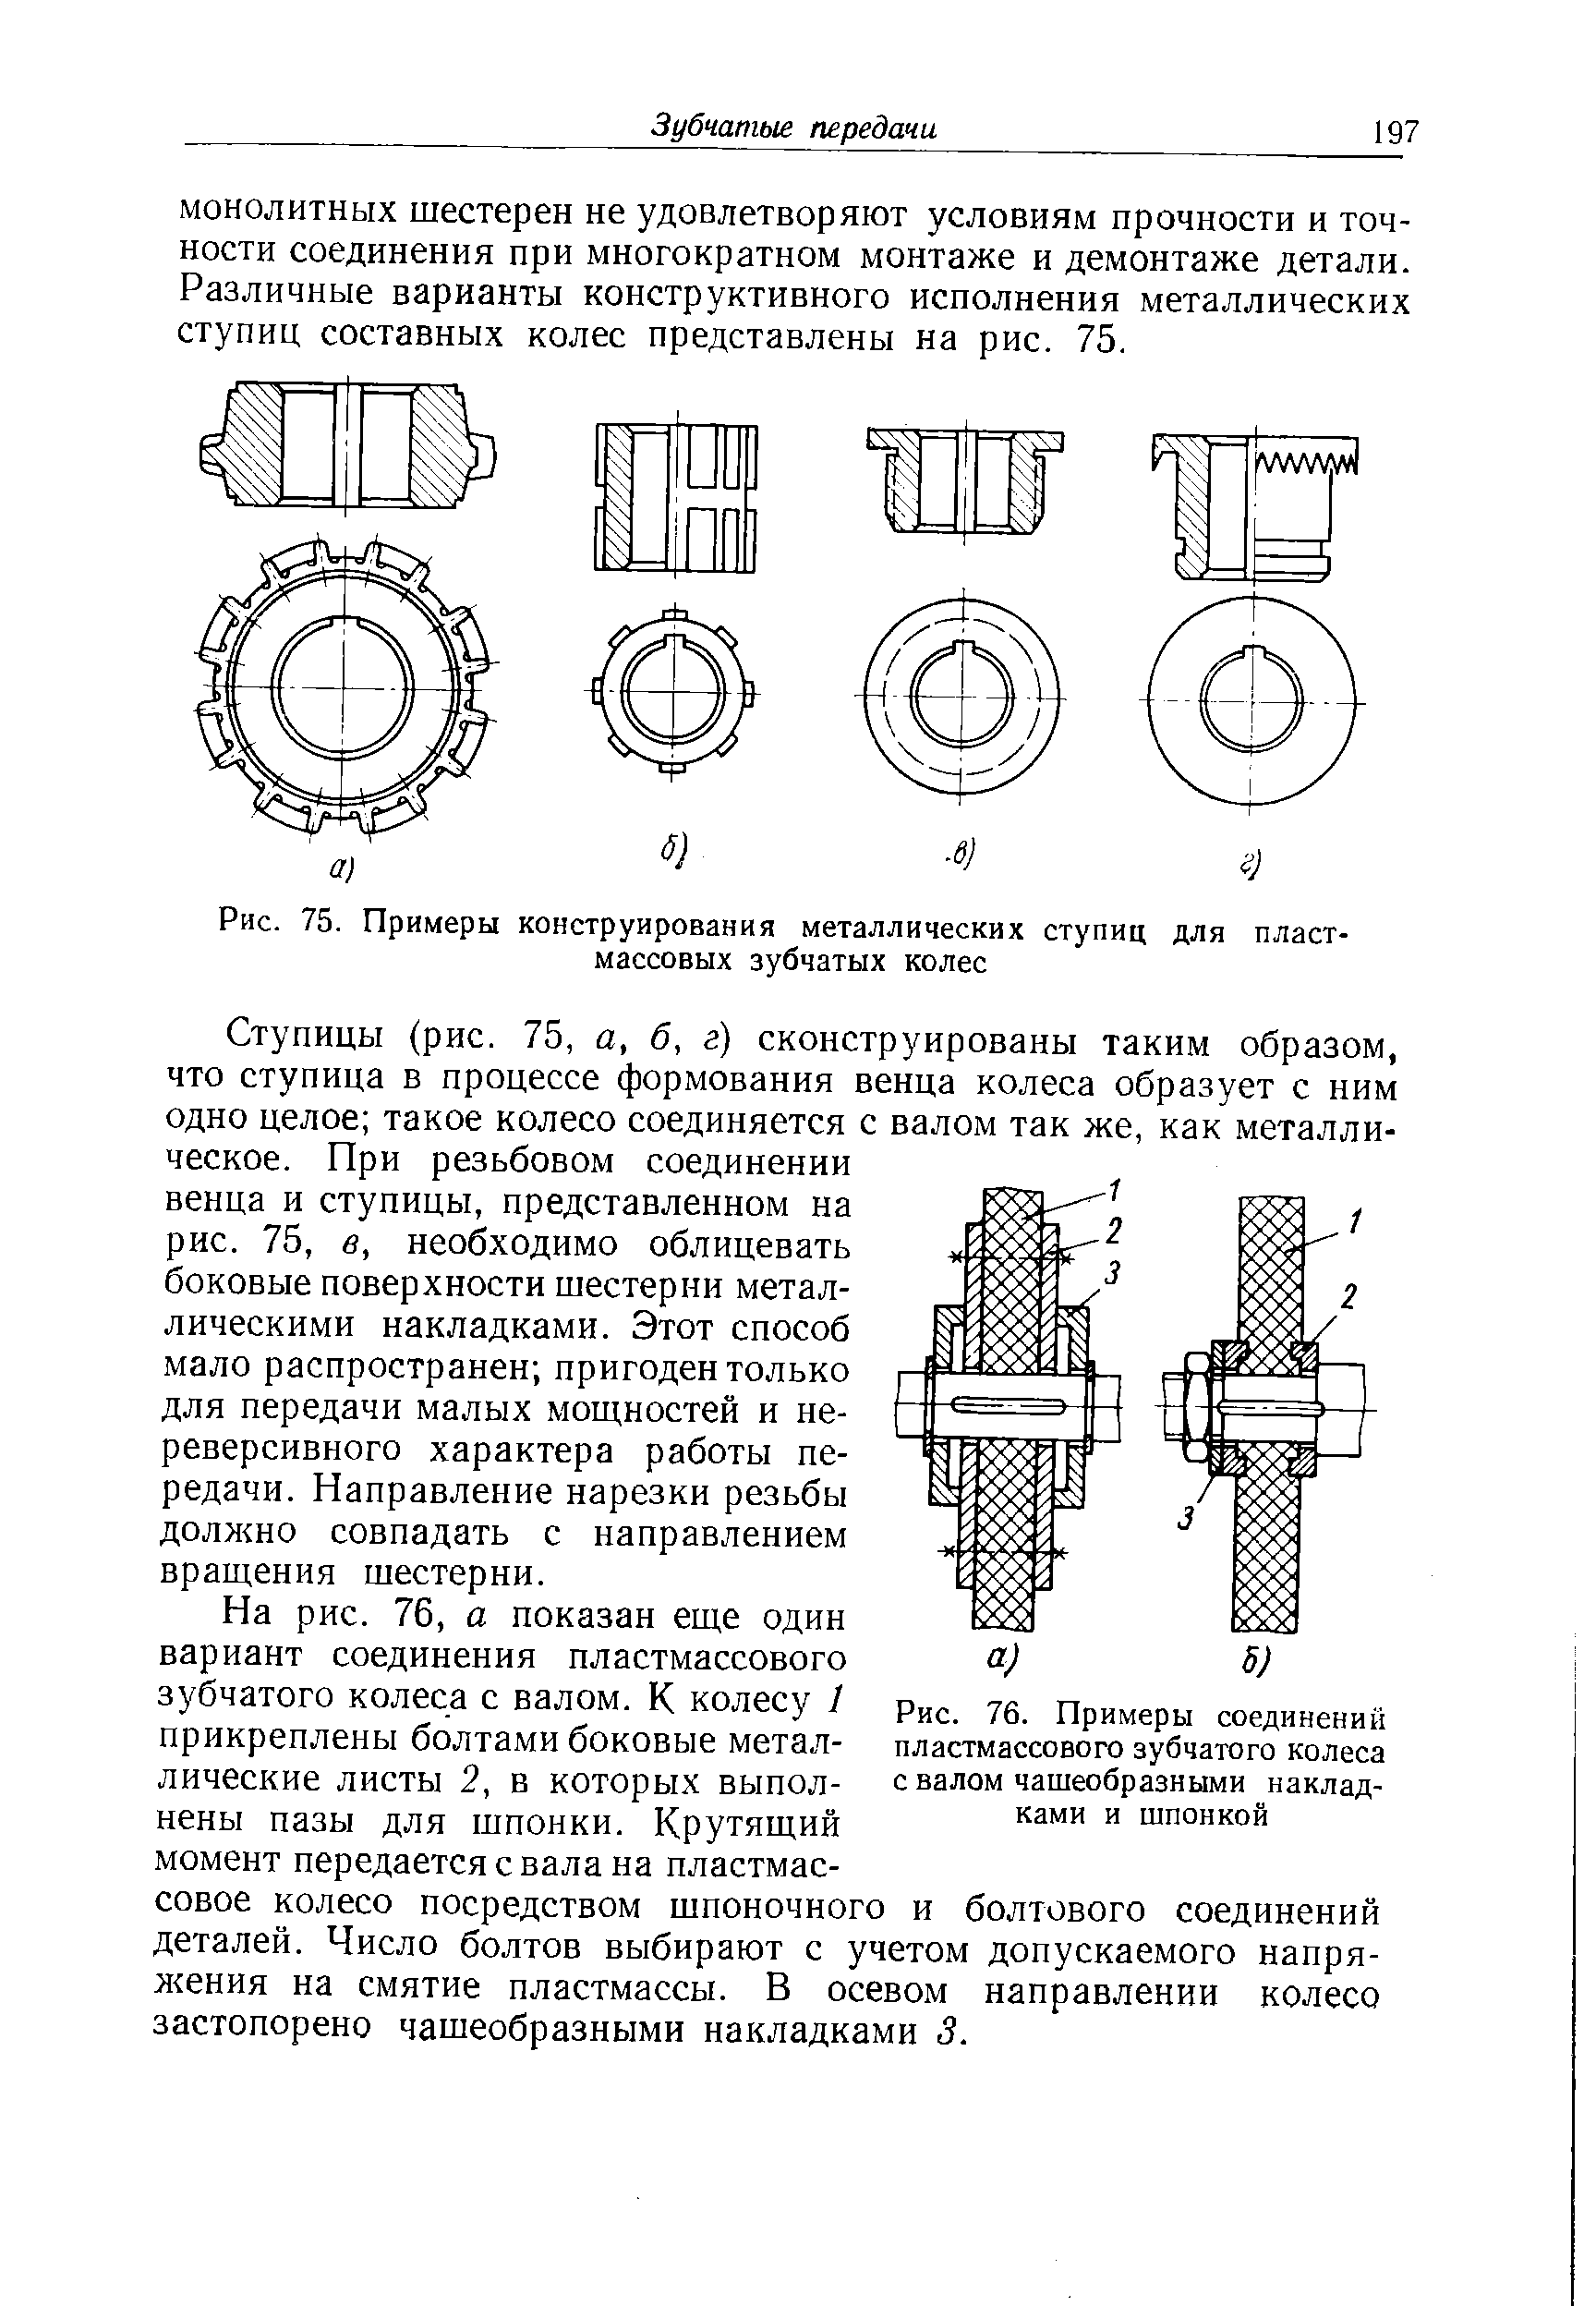 Рис. 76. Примеры соединений пластмассового зубчатого колеса с валом чашеобразными накладками и шпонкой
